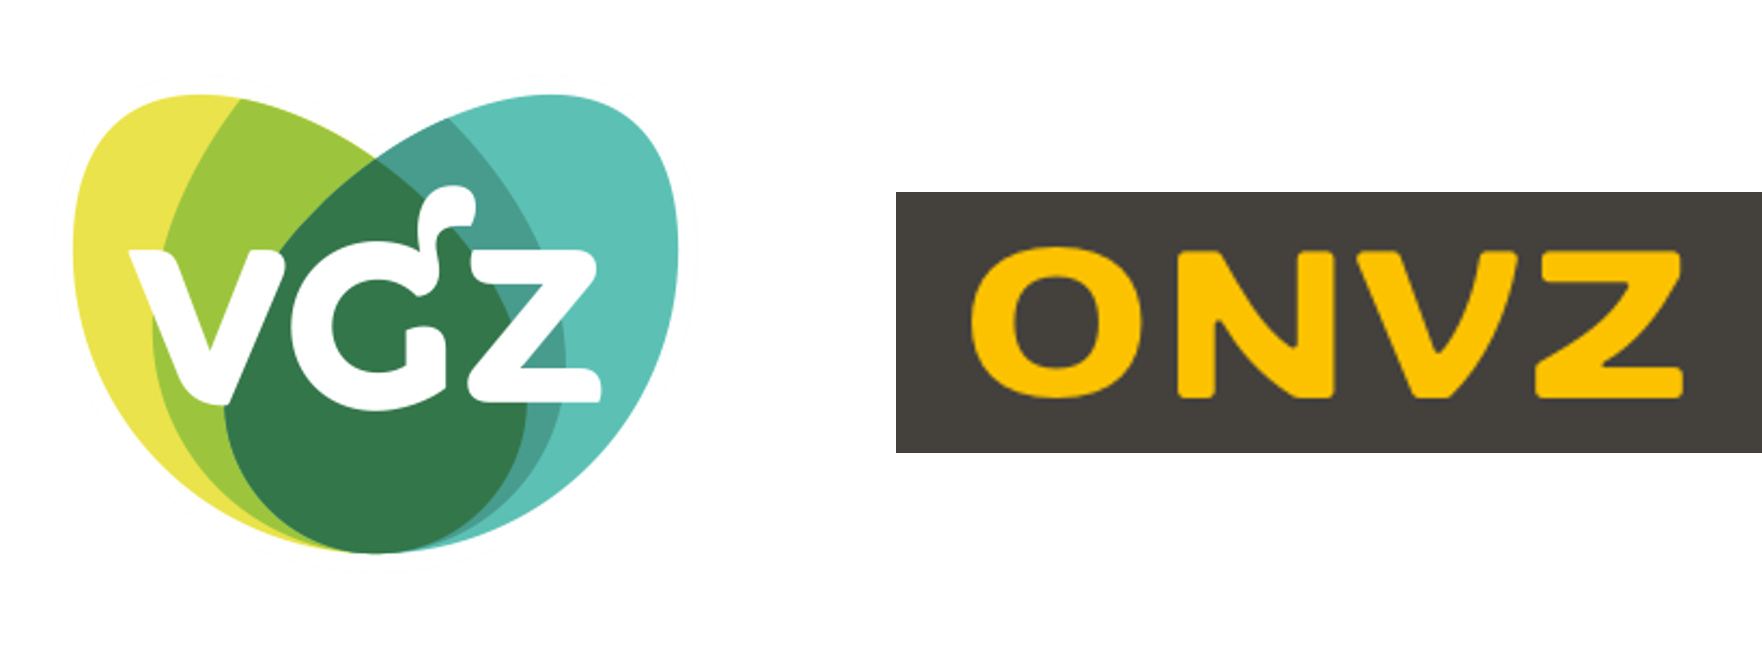 Logo onvz en VGZ